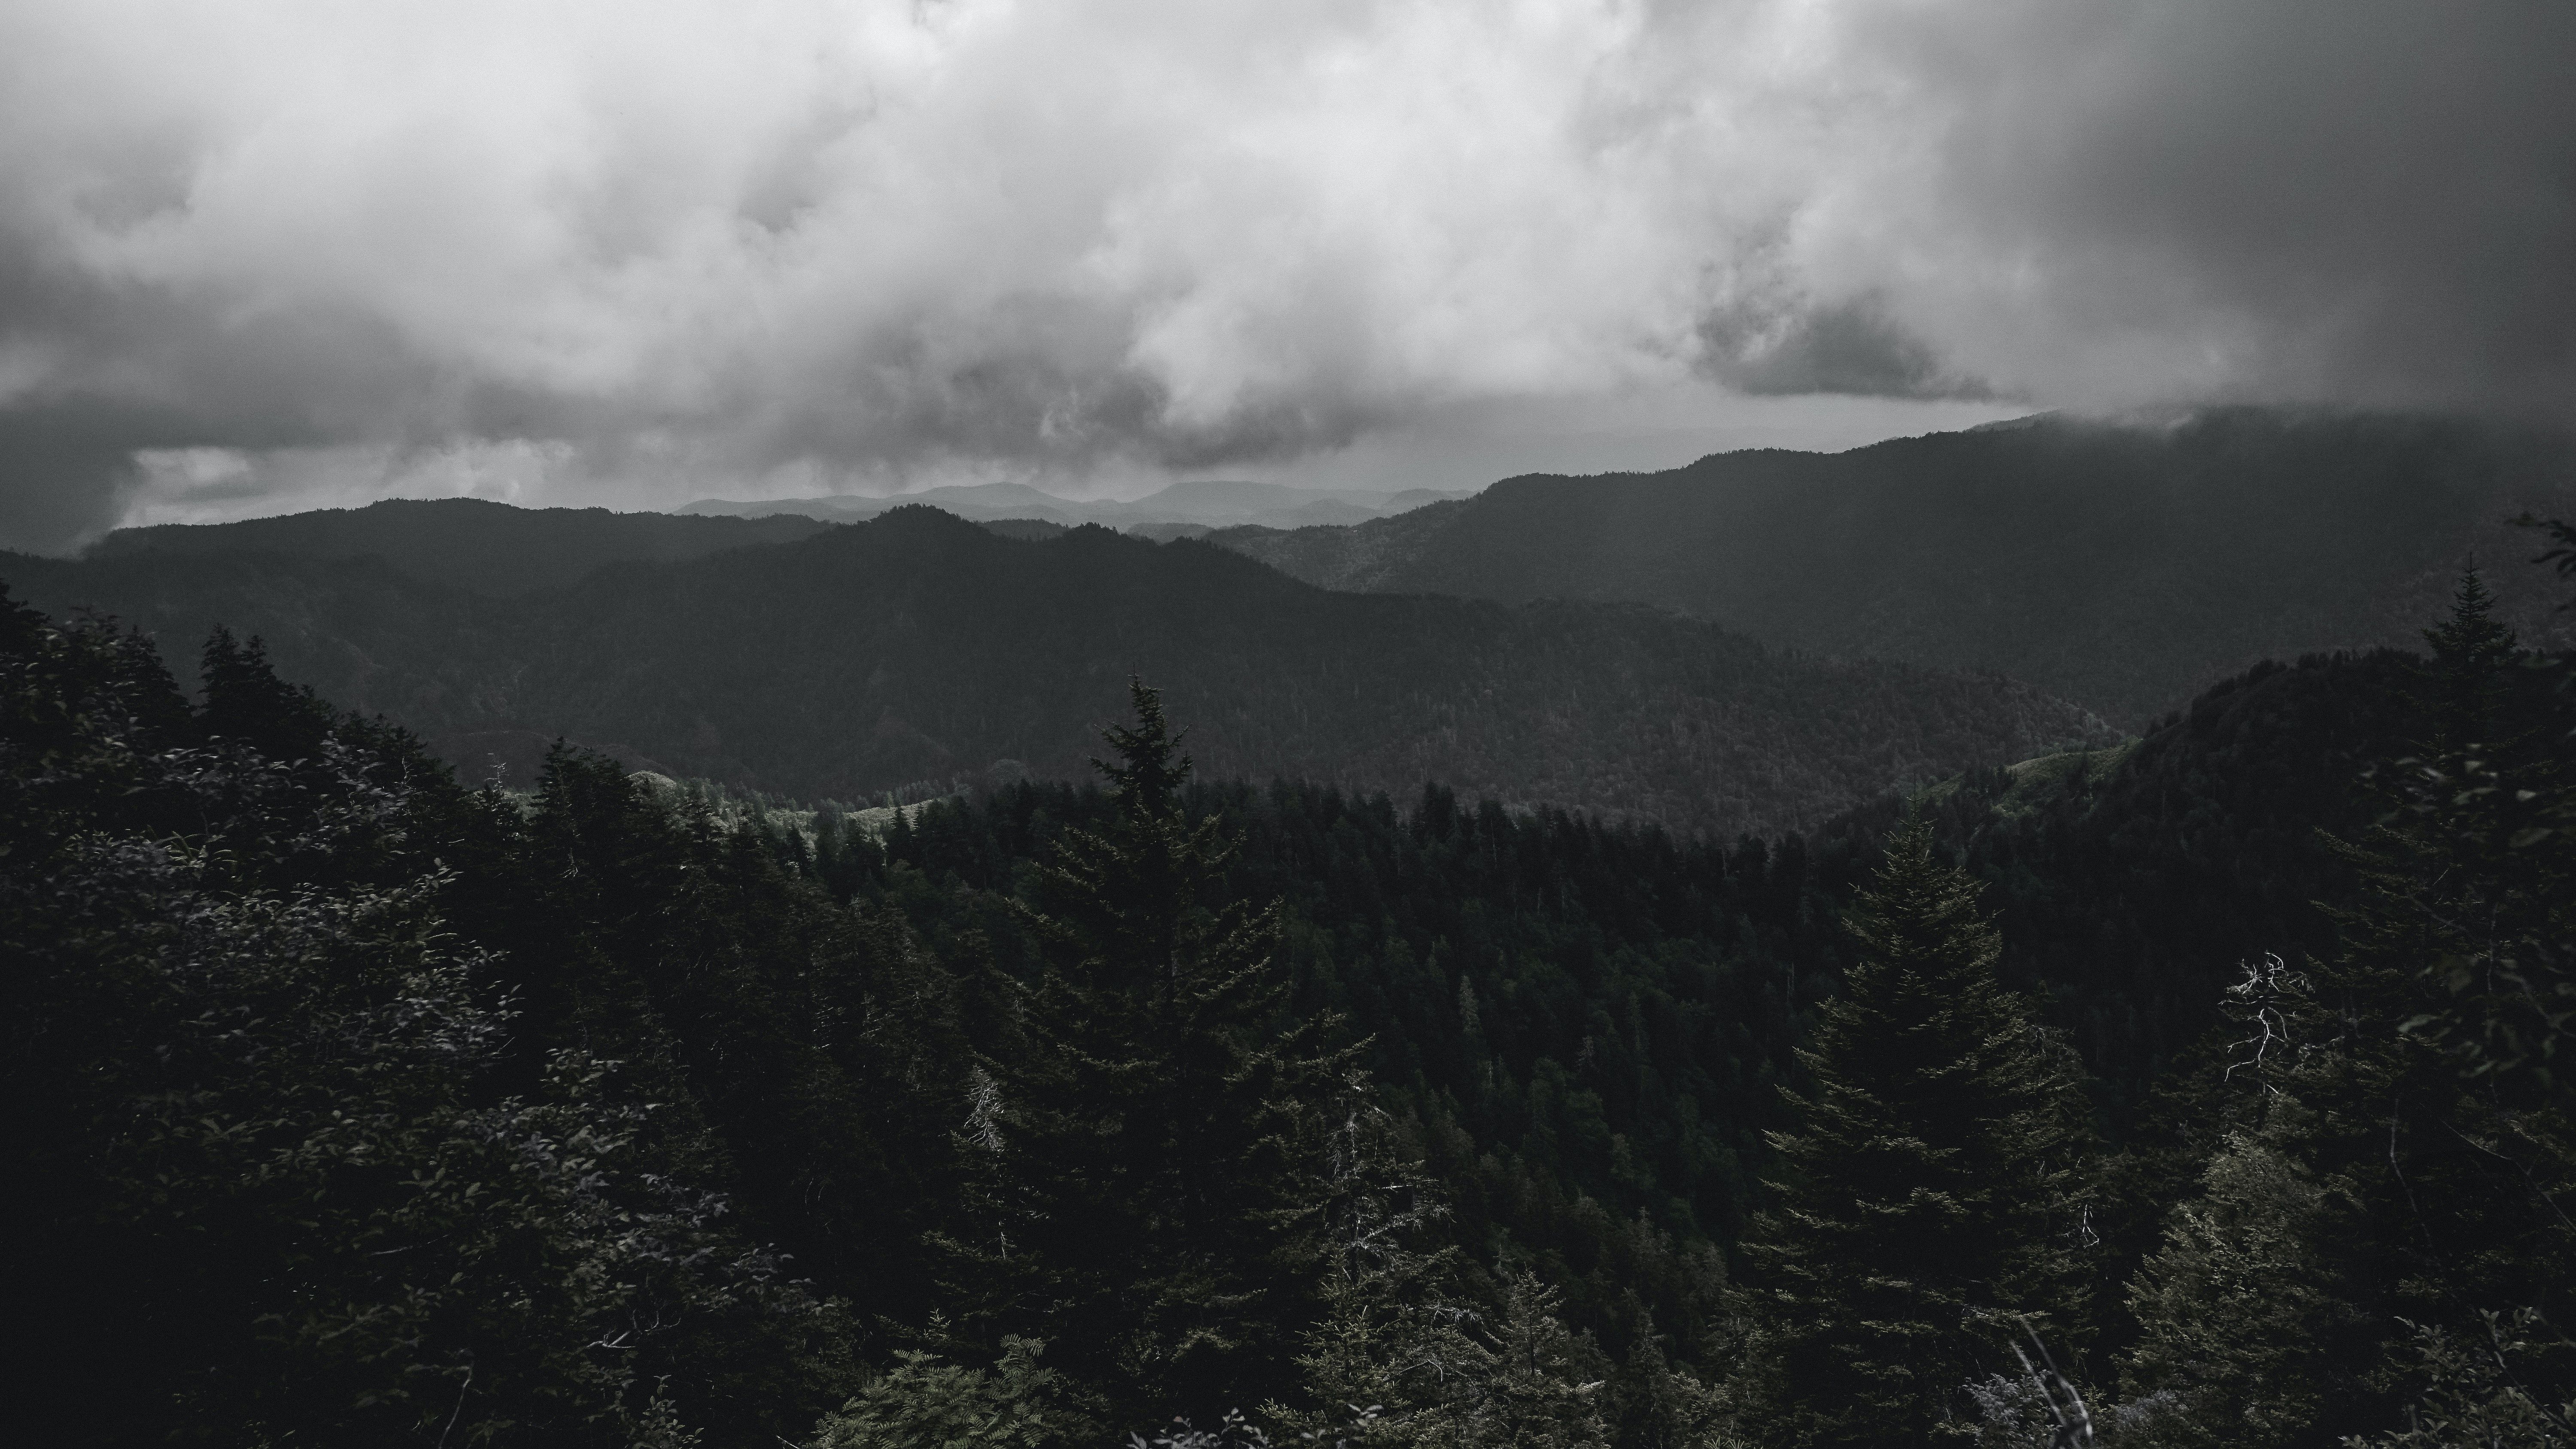  Dunkles Hintergrundbild 6000x3376. Kostenloses Foto zum Thema: 4k wallpaper, bäume, berge, dunkel, hintergrund, holz, natur, nebel, wald